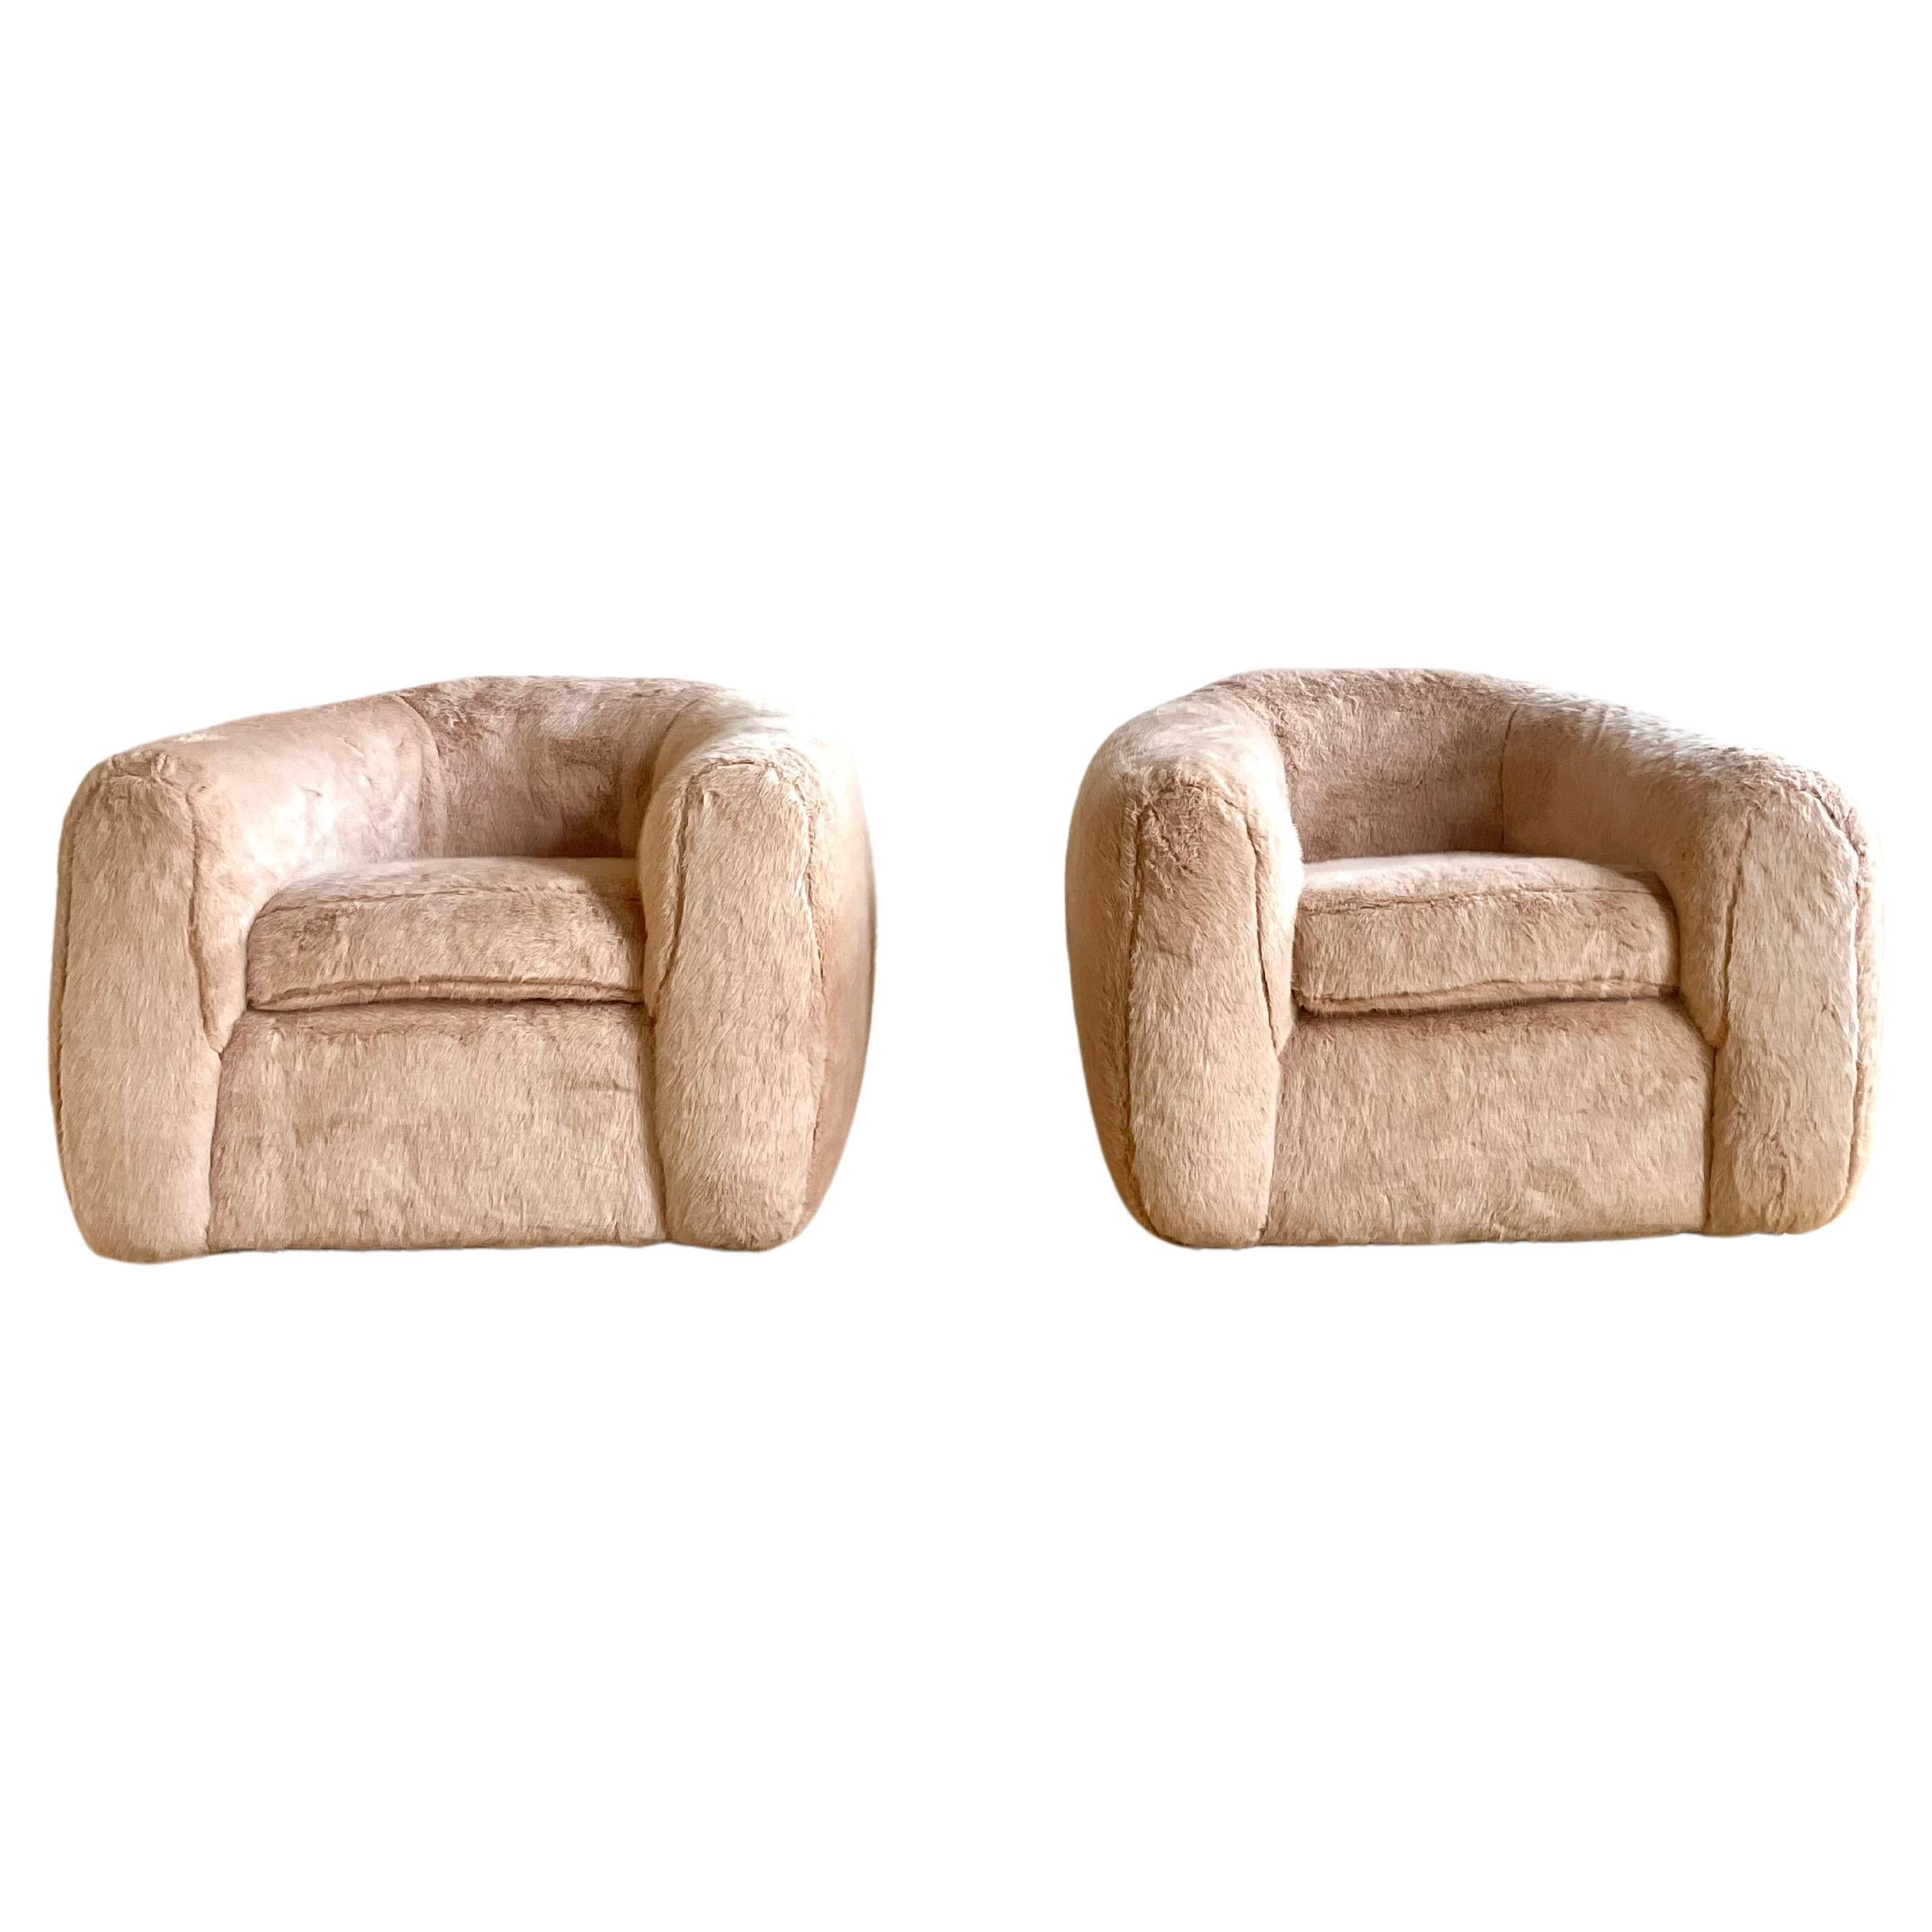 Paire de chaises de style Jean Royere en fausse fourrure rose pâle.

Les chaises sont extrêmement confortables avec un profil unique cachant 4 pieds en bois. 

Ces chaises ont été fabriquées sur mesure pour un penthouse sophistiqué de